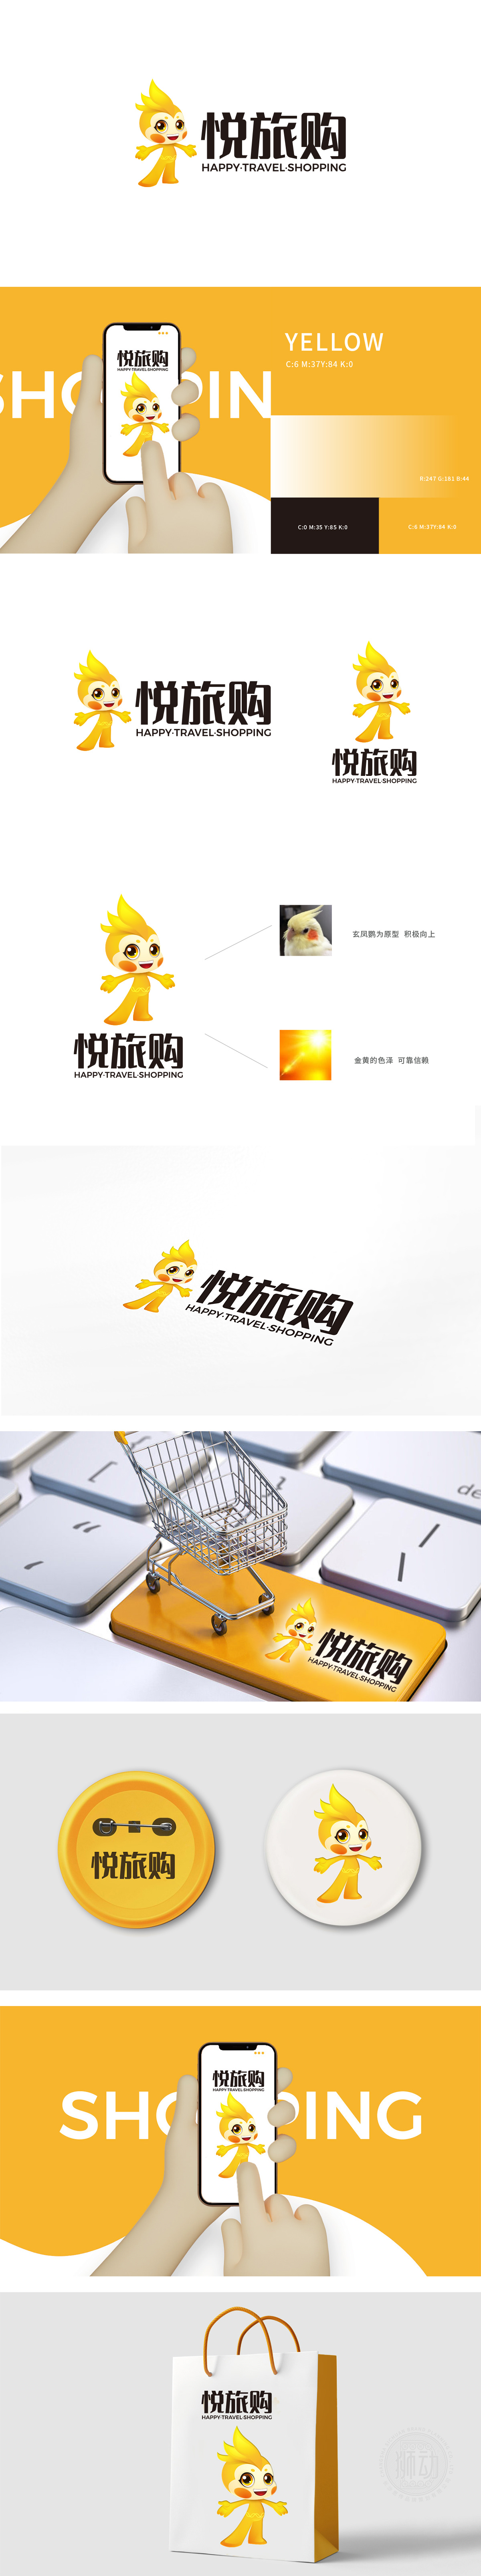 悦旅购 互联网/线上平台 LOGO设计